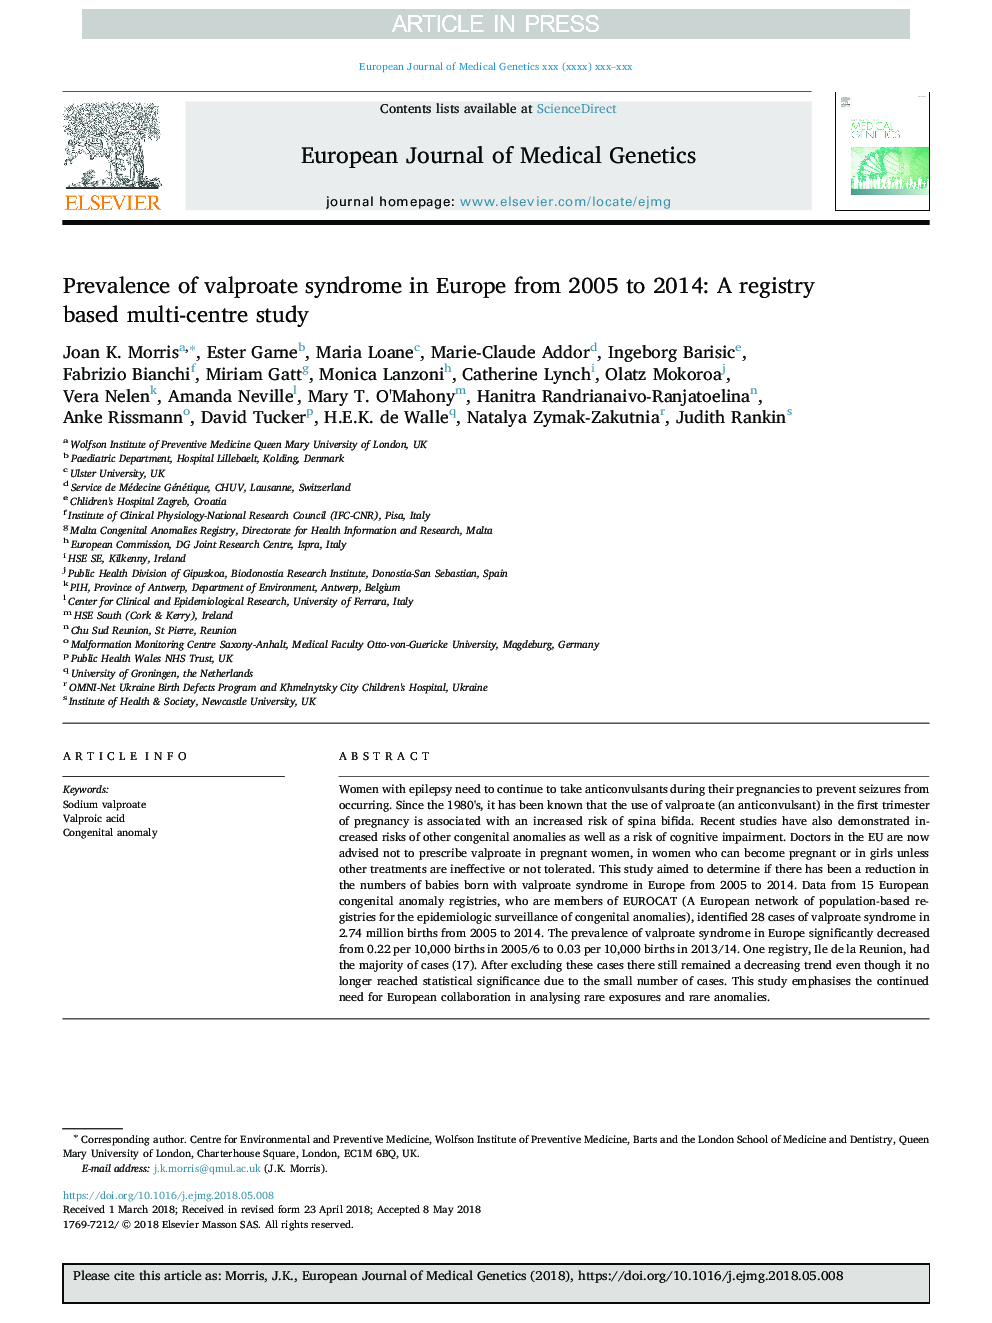 شیوع سندرم والپروات در اروپا از سال 2005 تا 2014: مطالعه چند مرکزی مبتنی بر رجیستری